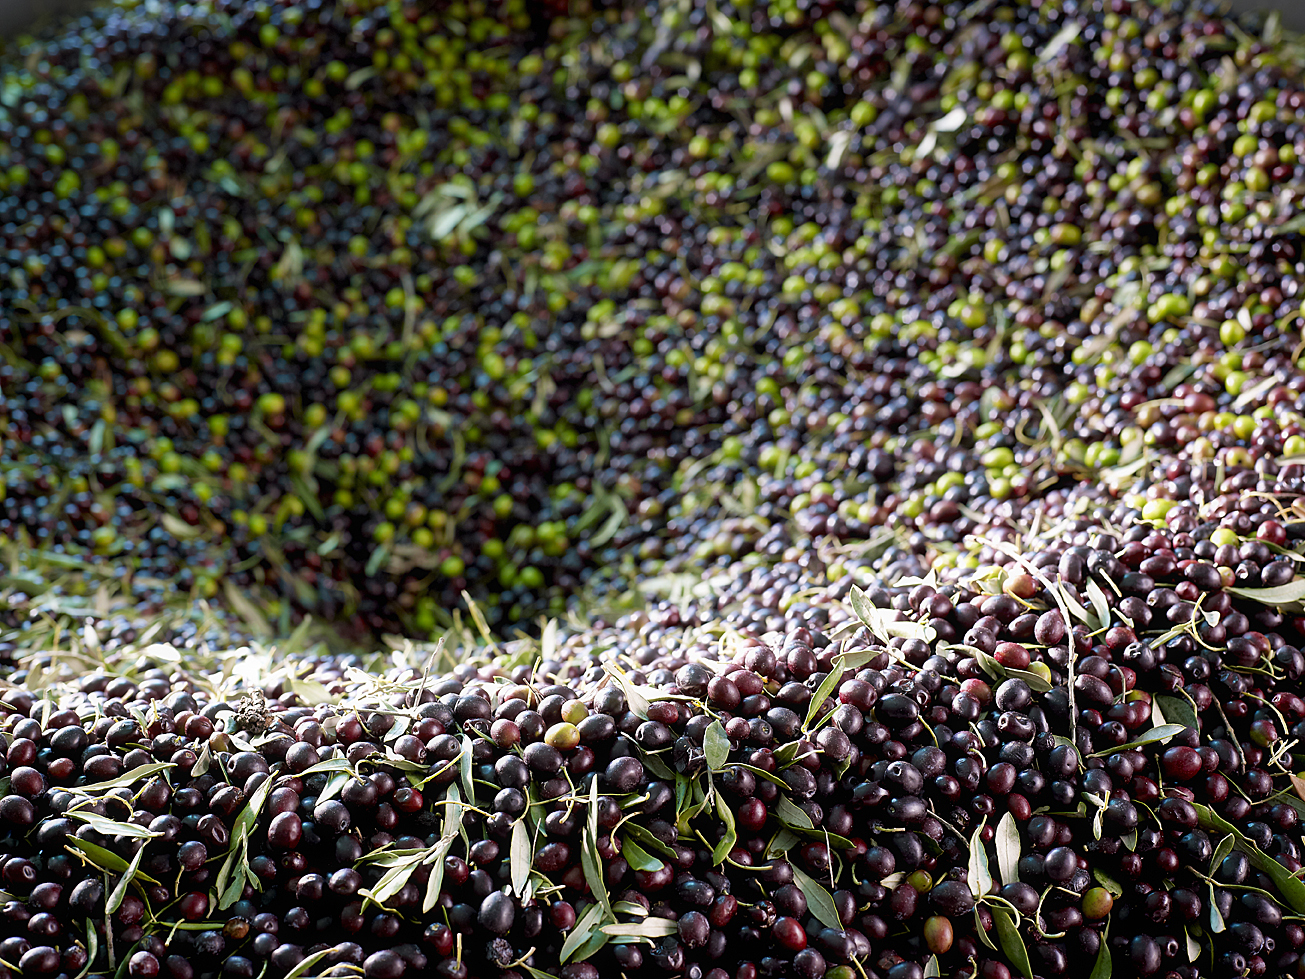 Les olives sont triées plusieurs fois pour séparer les feuilles et branches des fruits